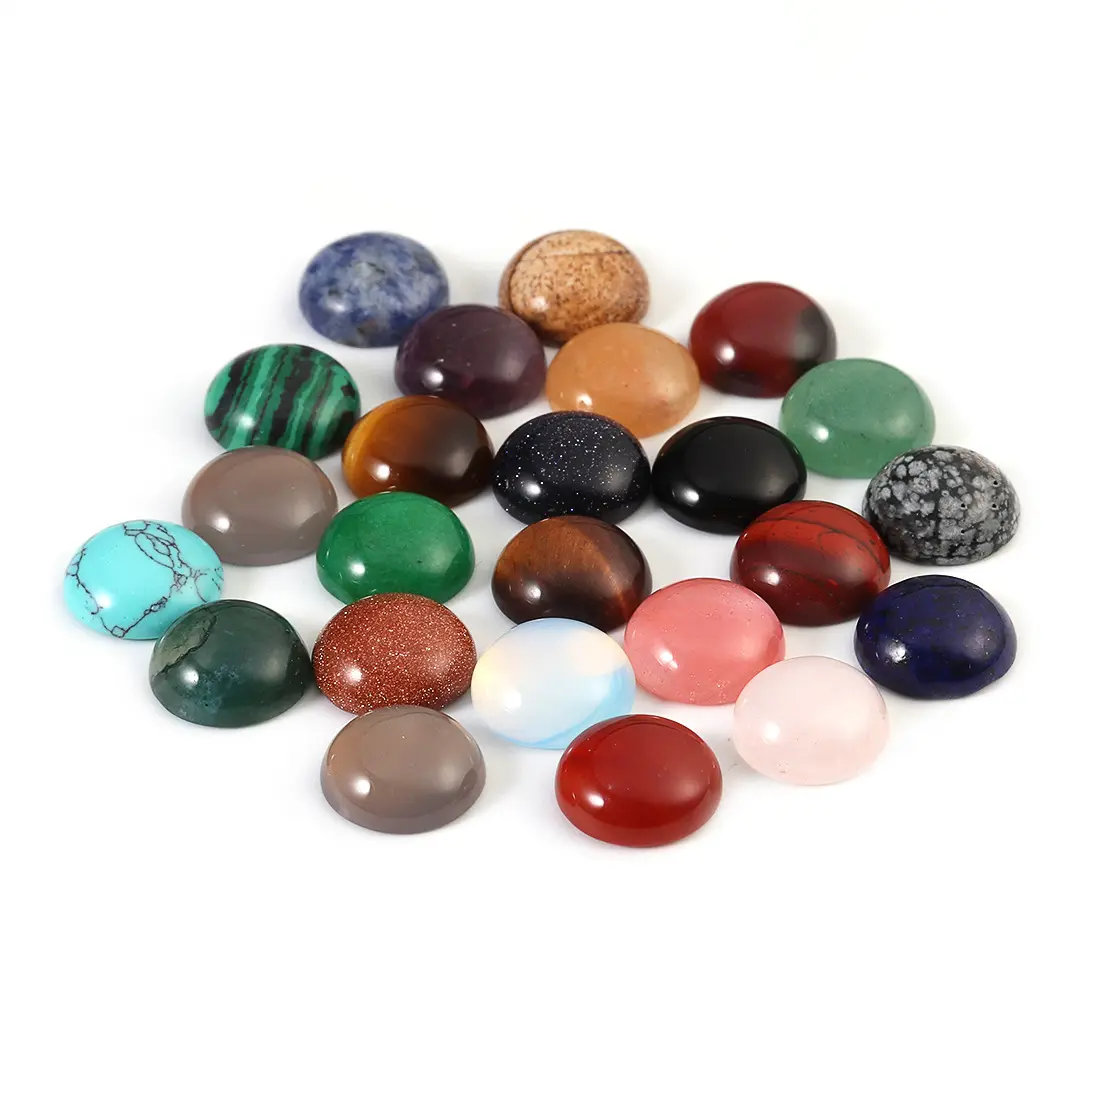 PANGEM natural de piedras preciosas y semi preciosas piedra calibrado cabujones 6-25mm para ajuste de la joyería y de montaje 50 opciones